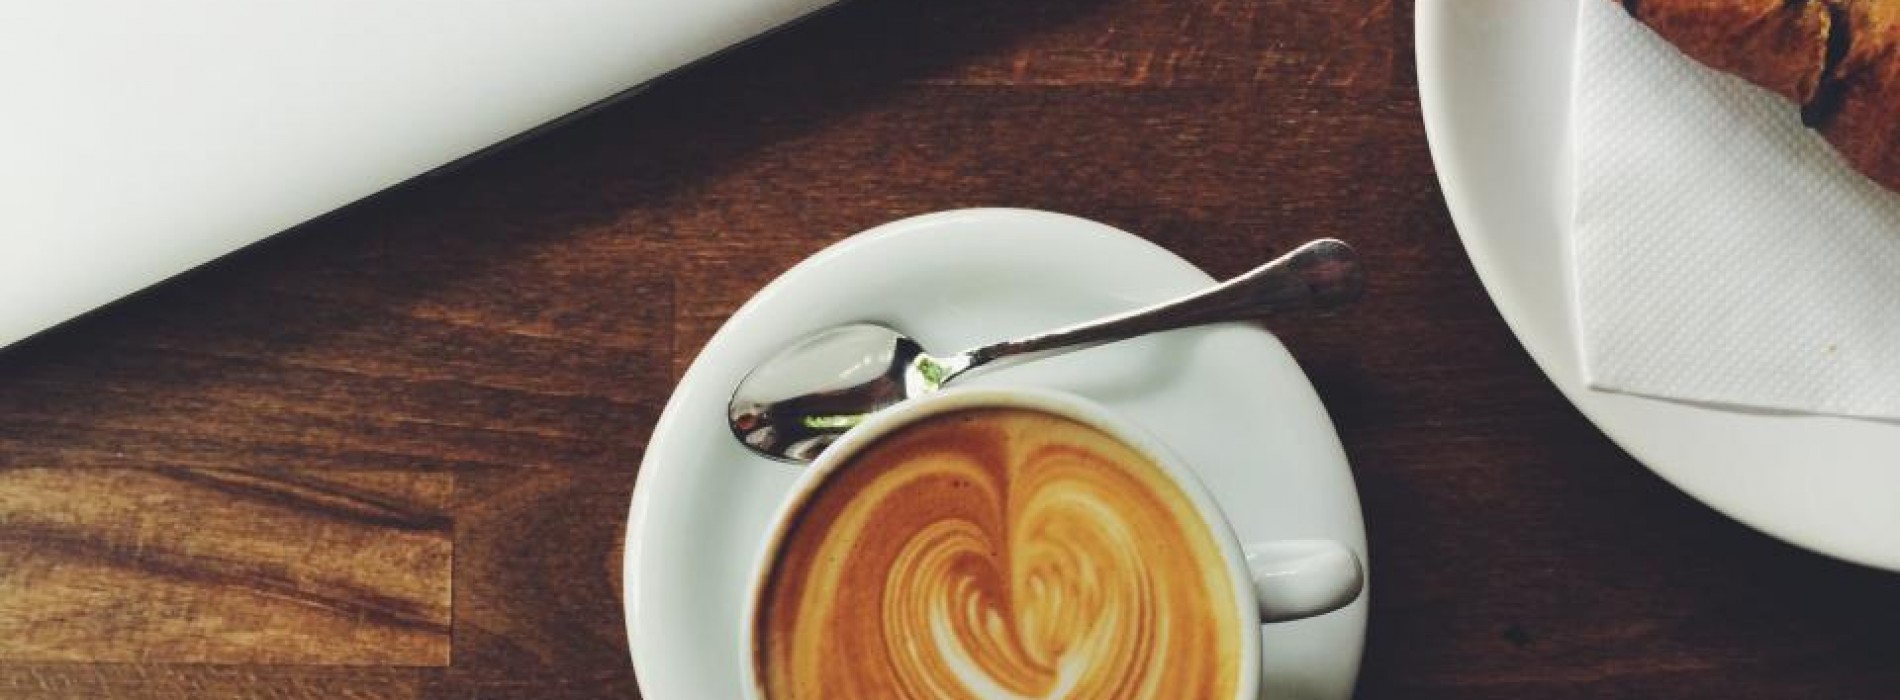 Koffie ongezond? Dit zijn DE 7 gezondheidsvoordelen van koffie op een rij!